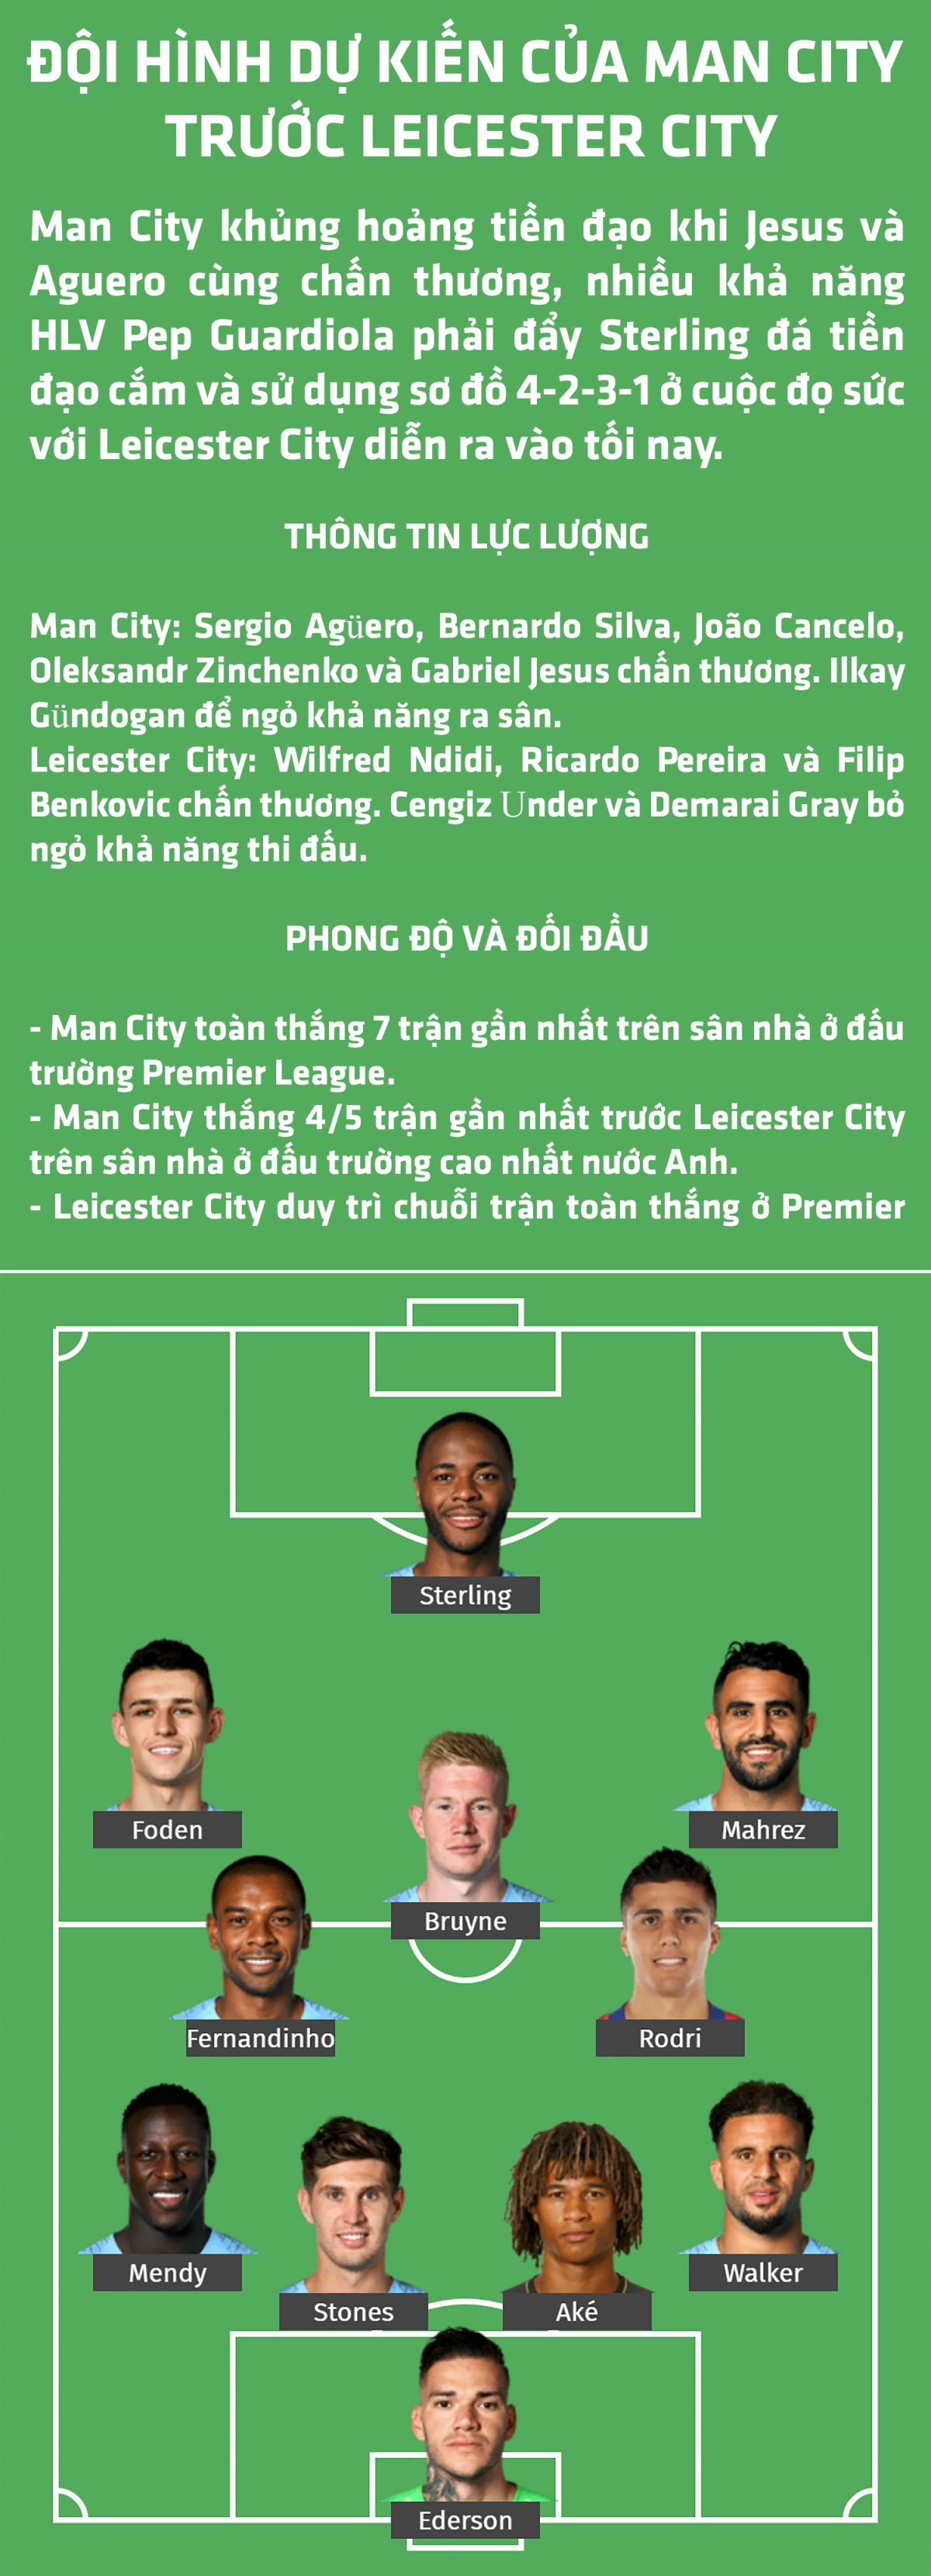 Man City "toang" hàng tiền đạo, HLV Guardiola dùng đội hình nào giải mã Leicester City?